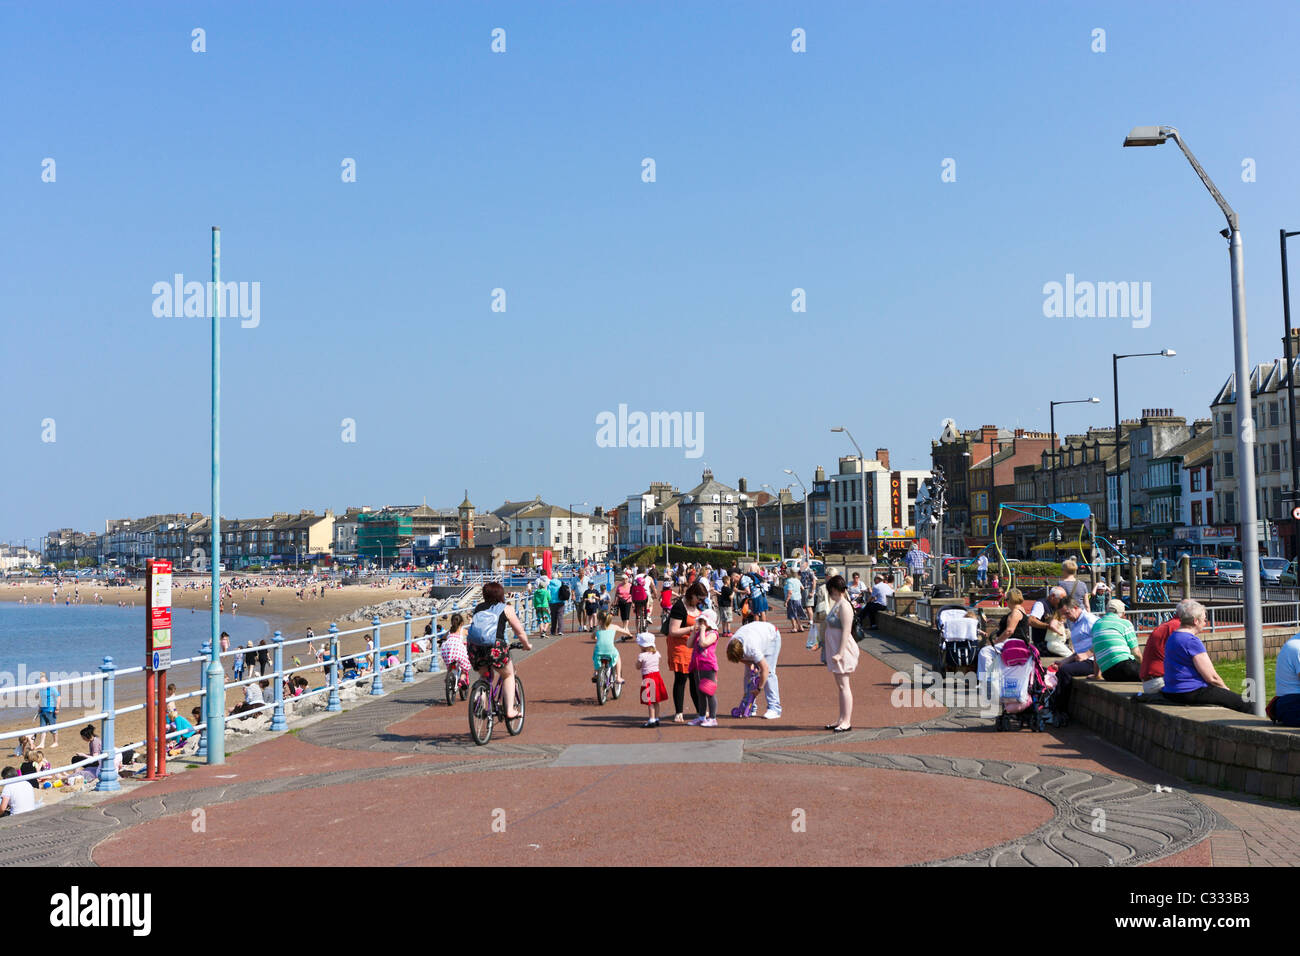 La passeggiata sul lungomare e dalla spiaggia della località balneare di Blackpool, Lancashire, Regno Unito Foto Stock